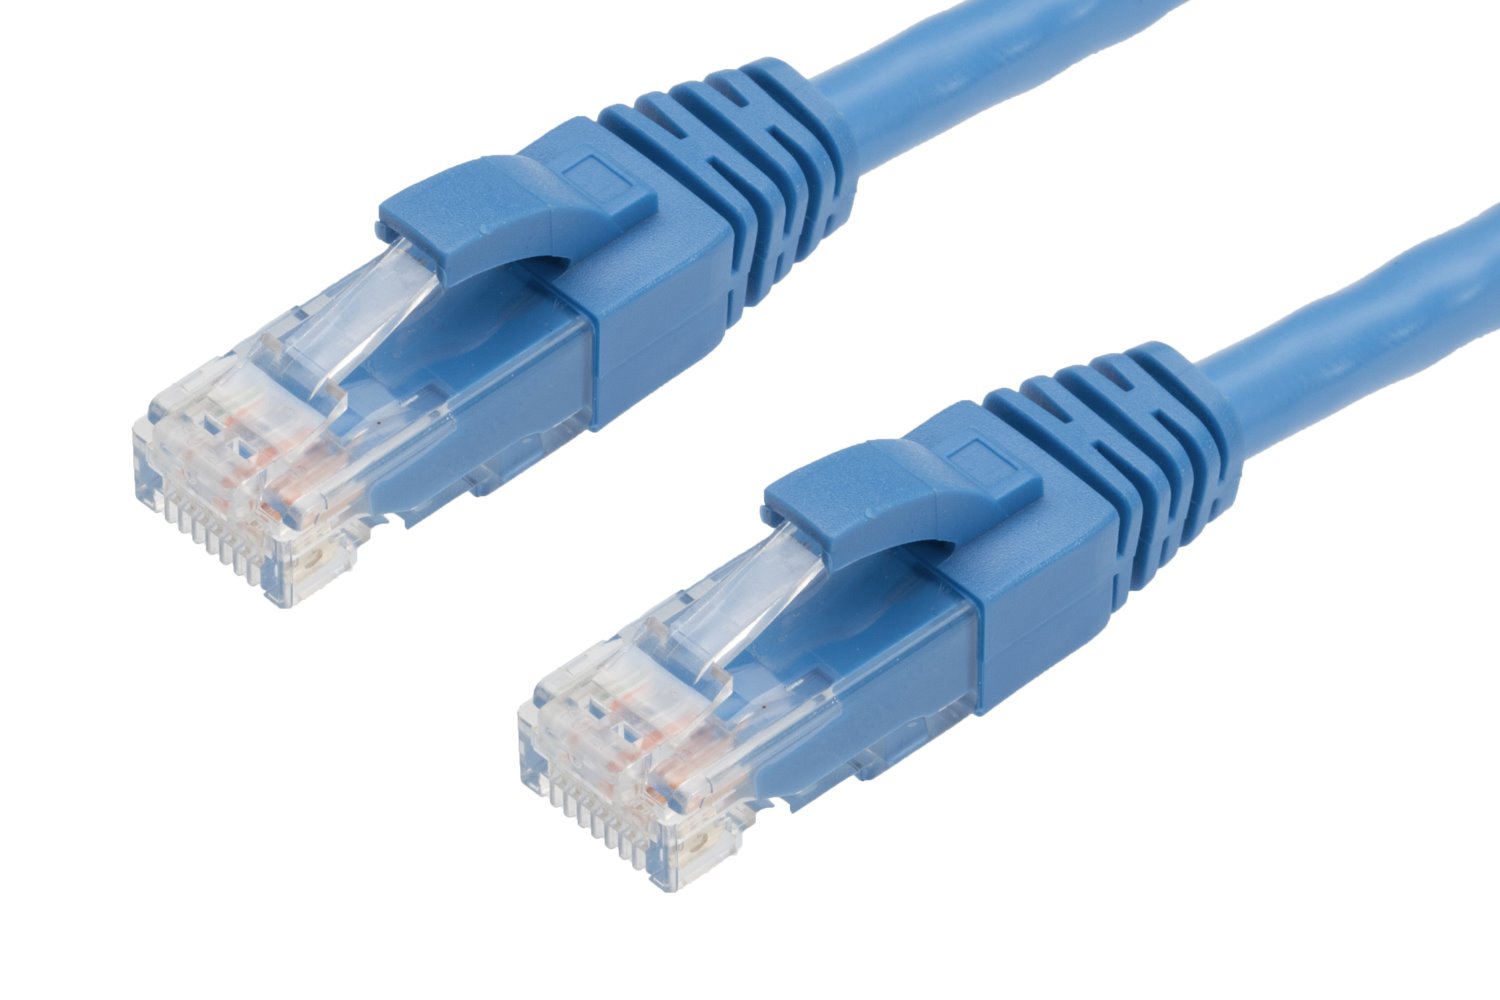 4Cabling 1M RJ45 Cat6 Ethernet Cable. Blue